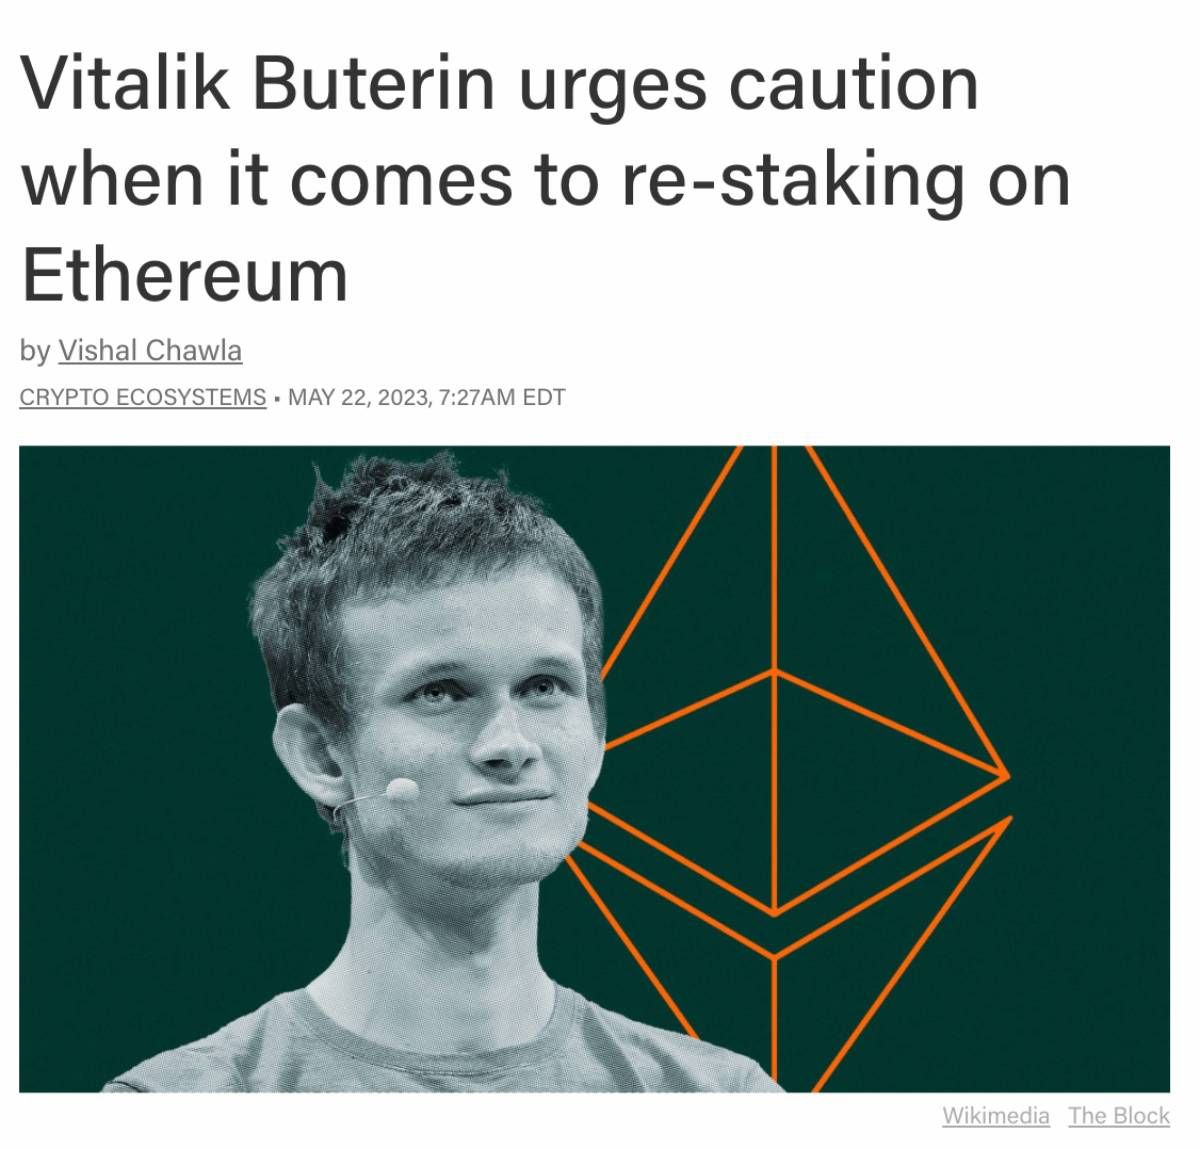 Vitalik từng kêu gọi cộng đồng cẩn trọng khi tham gia restaking trên Ethereum.